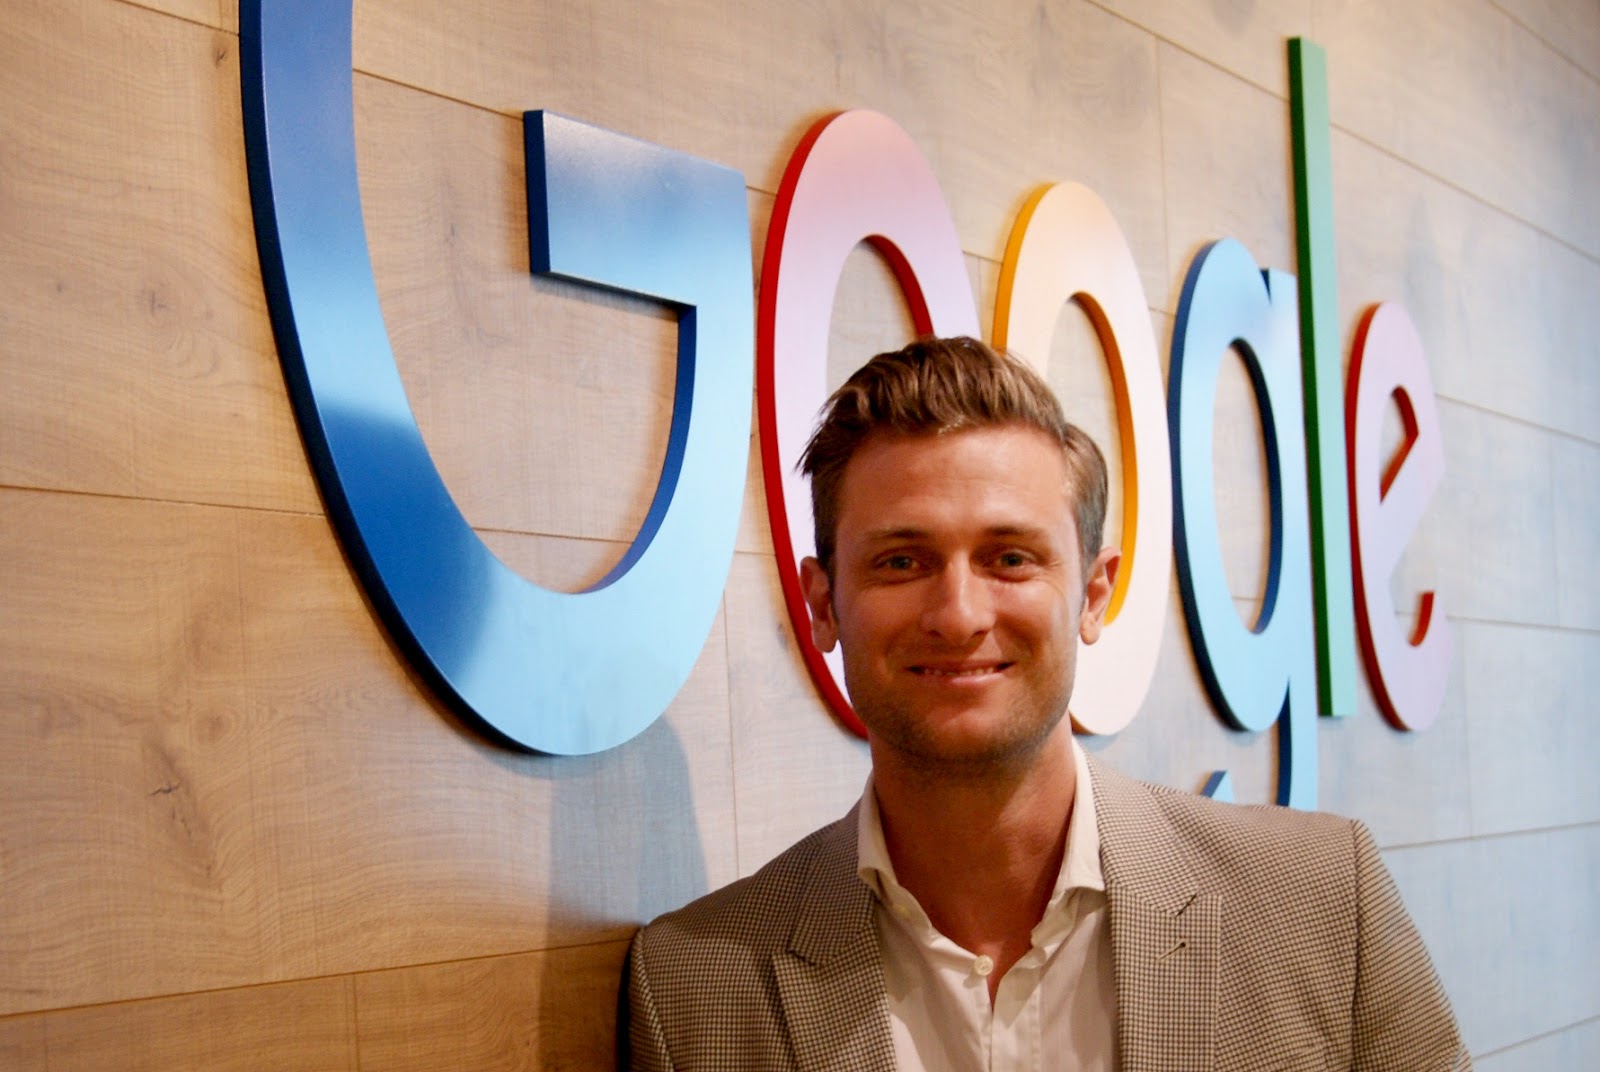 Google ประเทศไทยเปิดตัวหัวหน้าฝ่ายธุรกิจคนใหม่ Ben King